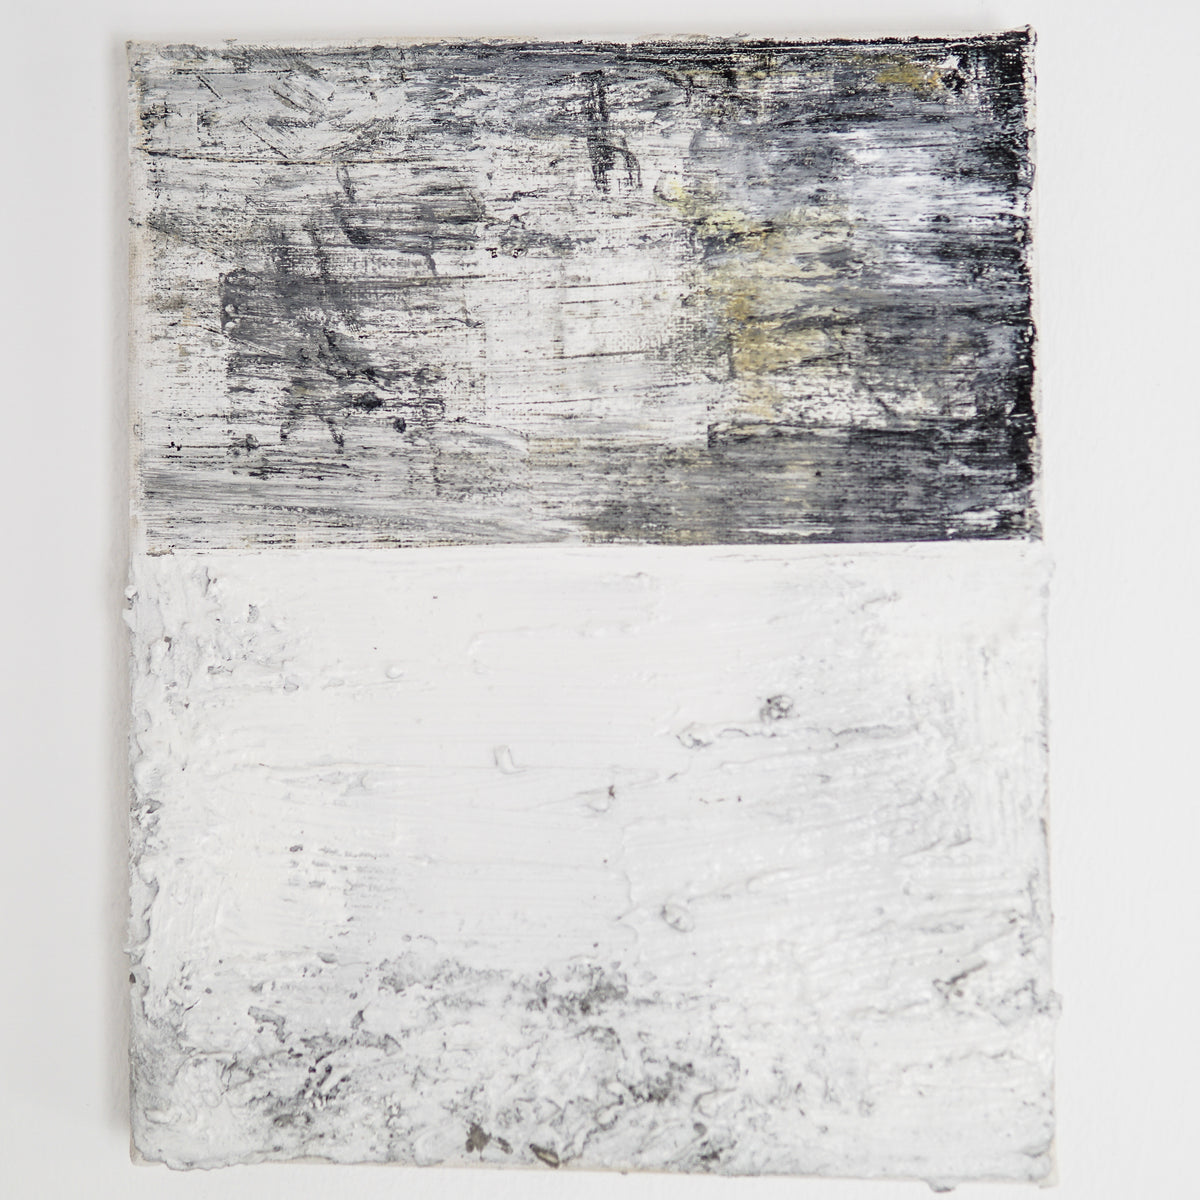 Ana Moraes | sem título III, 2021 | 30 x 20 cm | Pastel de óleo, cimento, acrílico e spray sobre tela